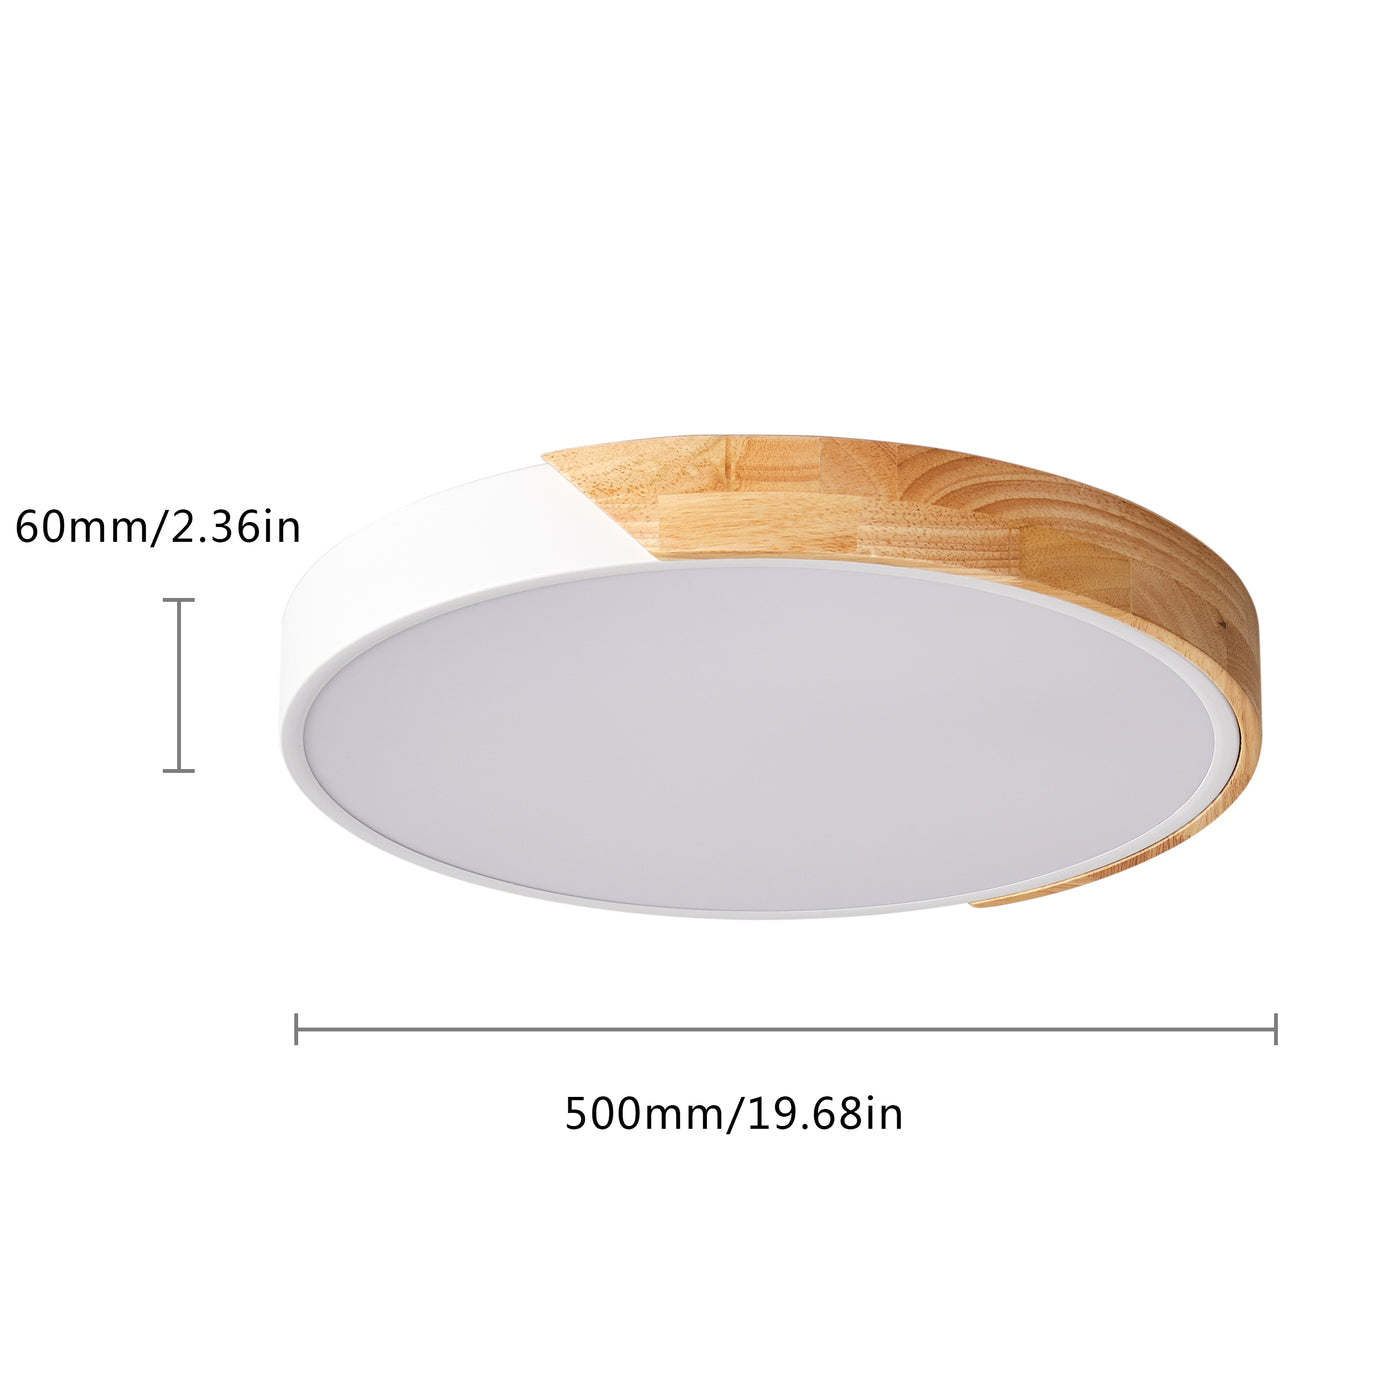 1-Light Round Acrylic LED Flush Mount Lighting